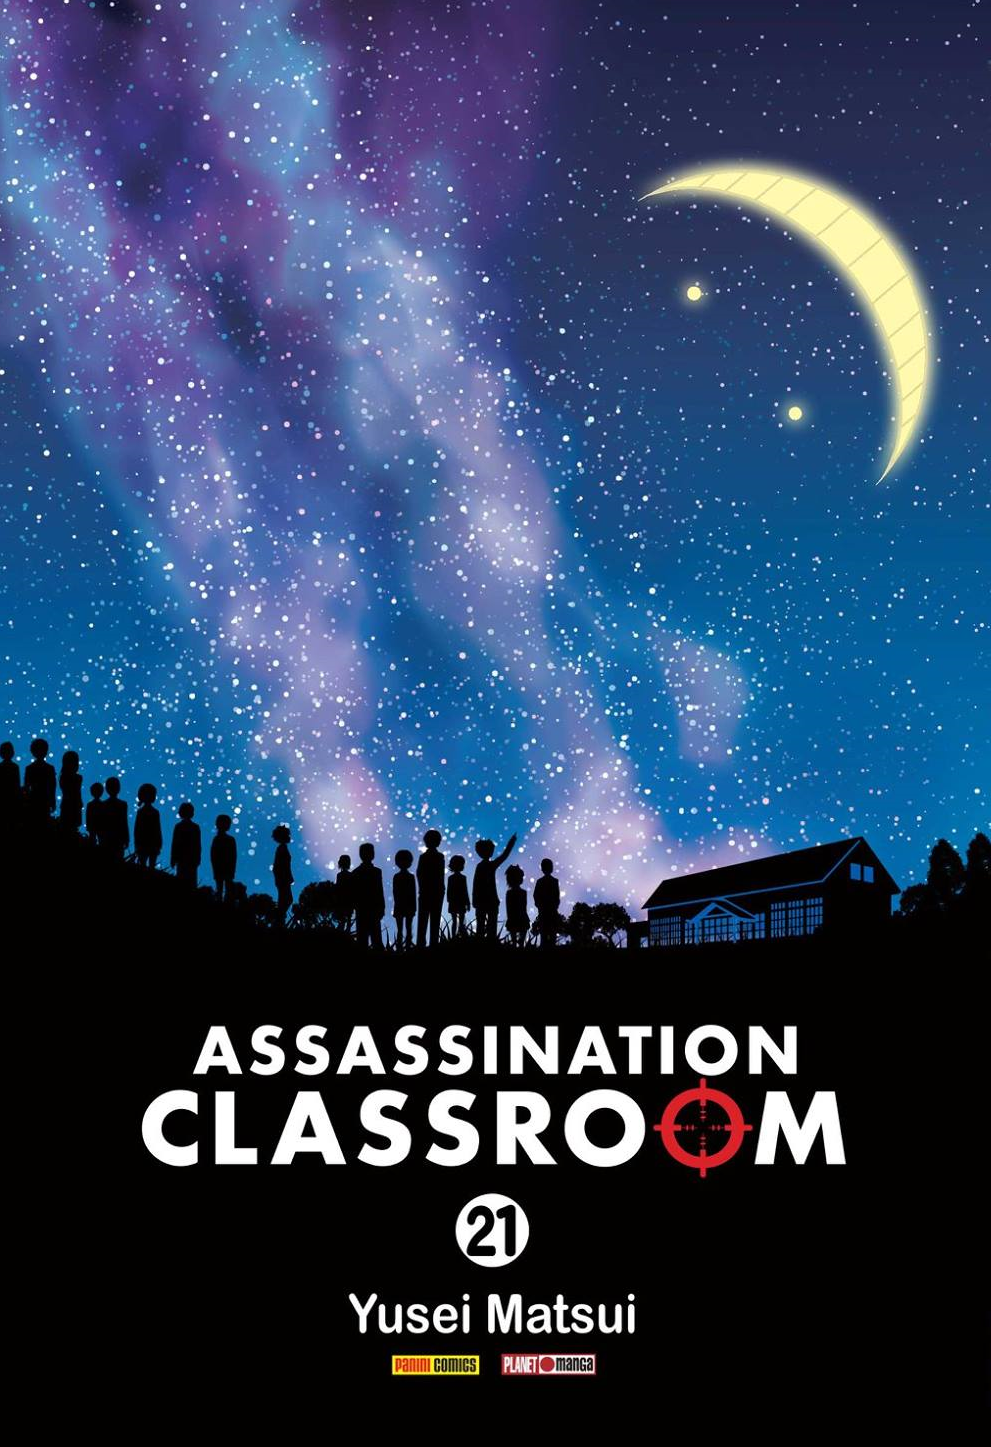 Assassination Classroom nº 21 de 21